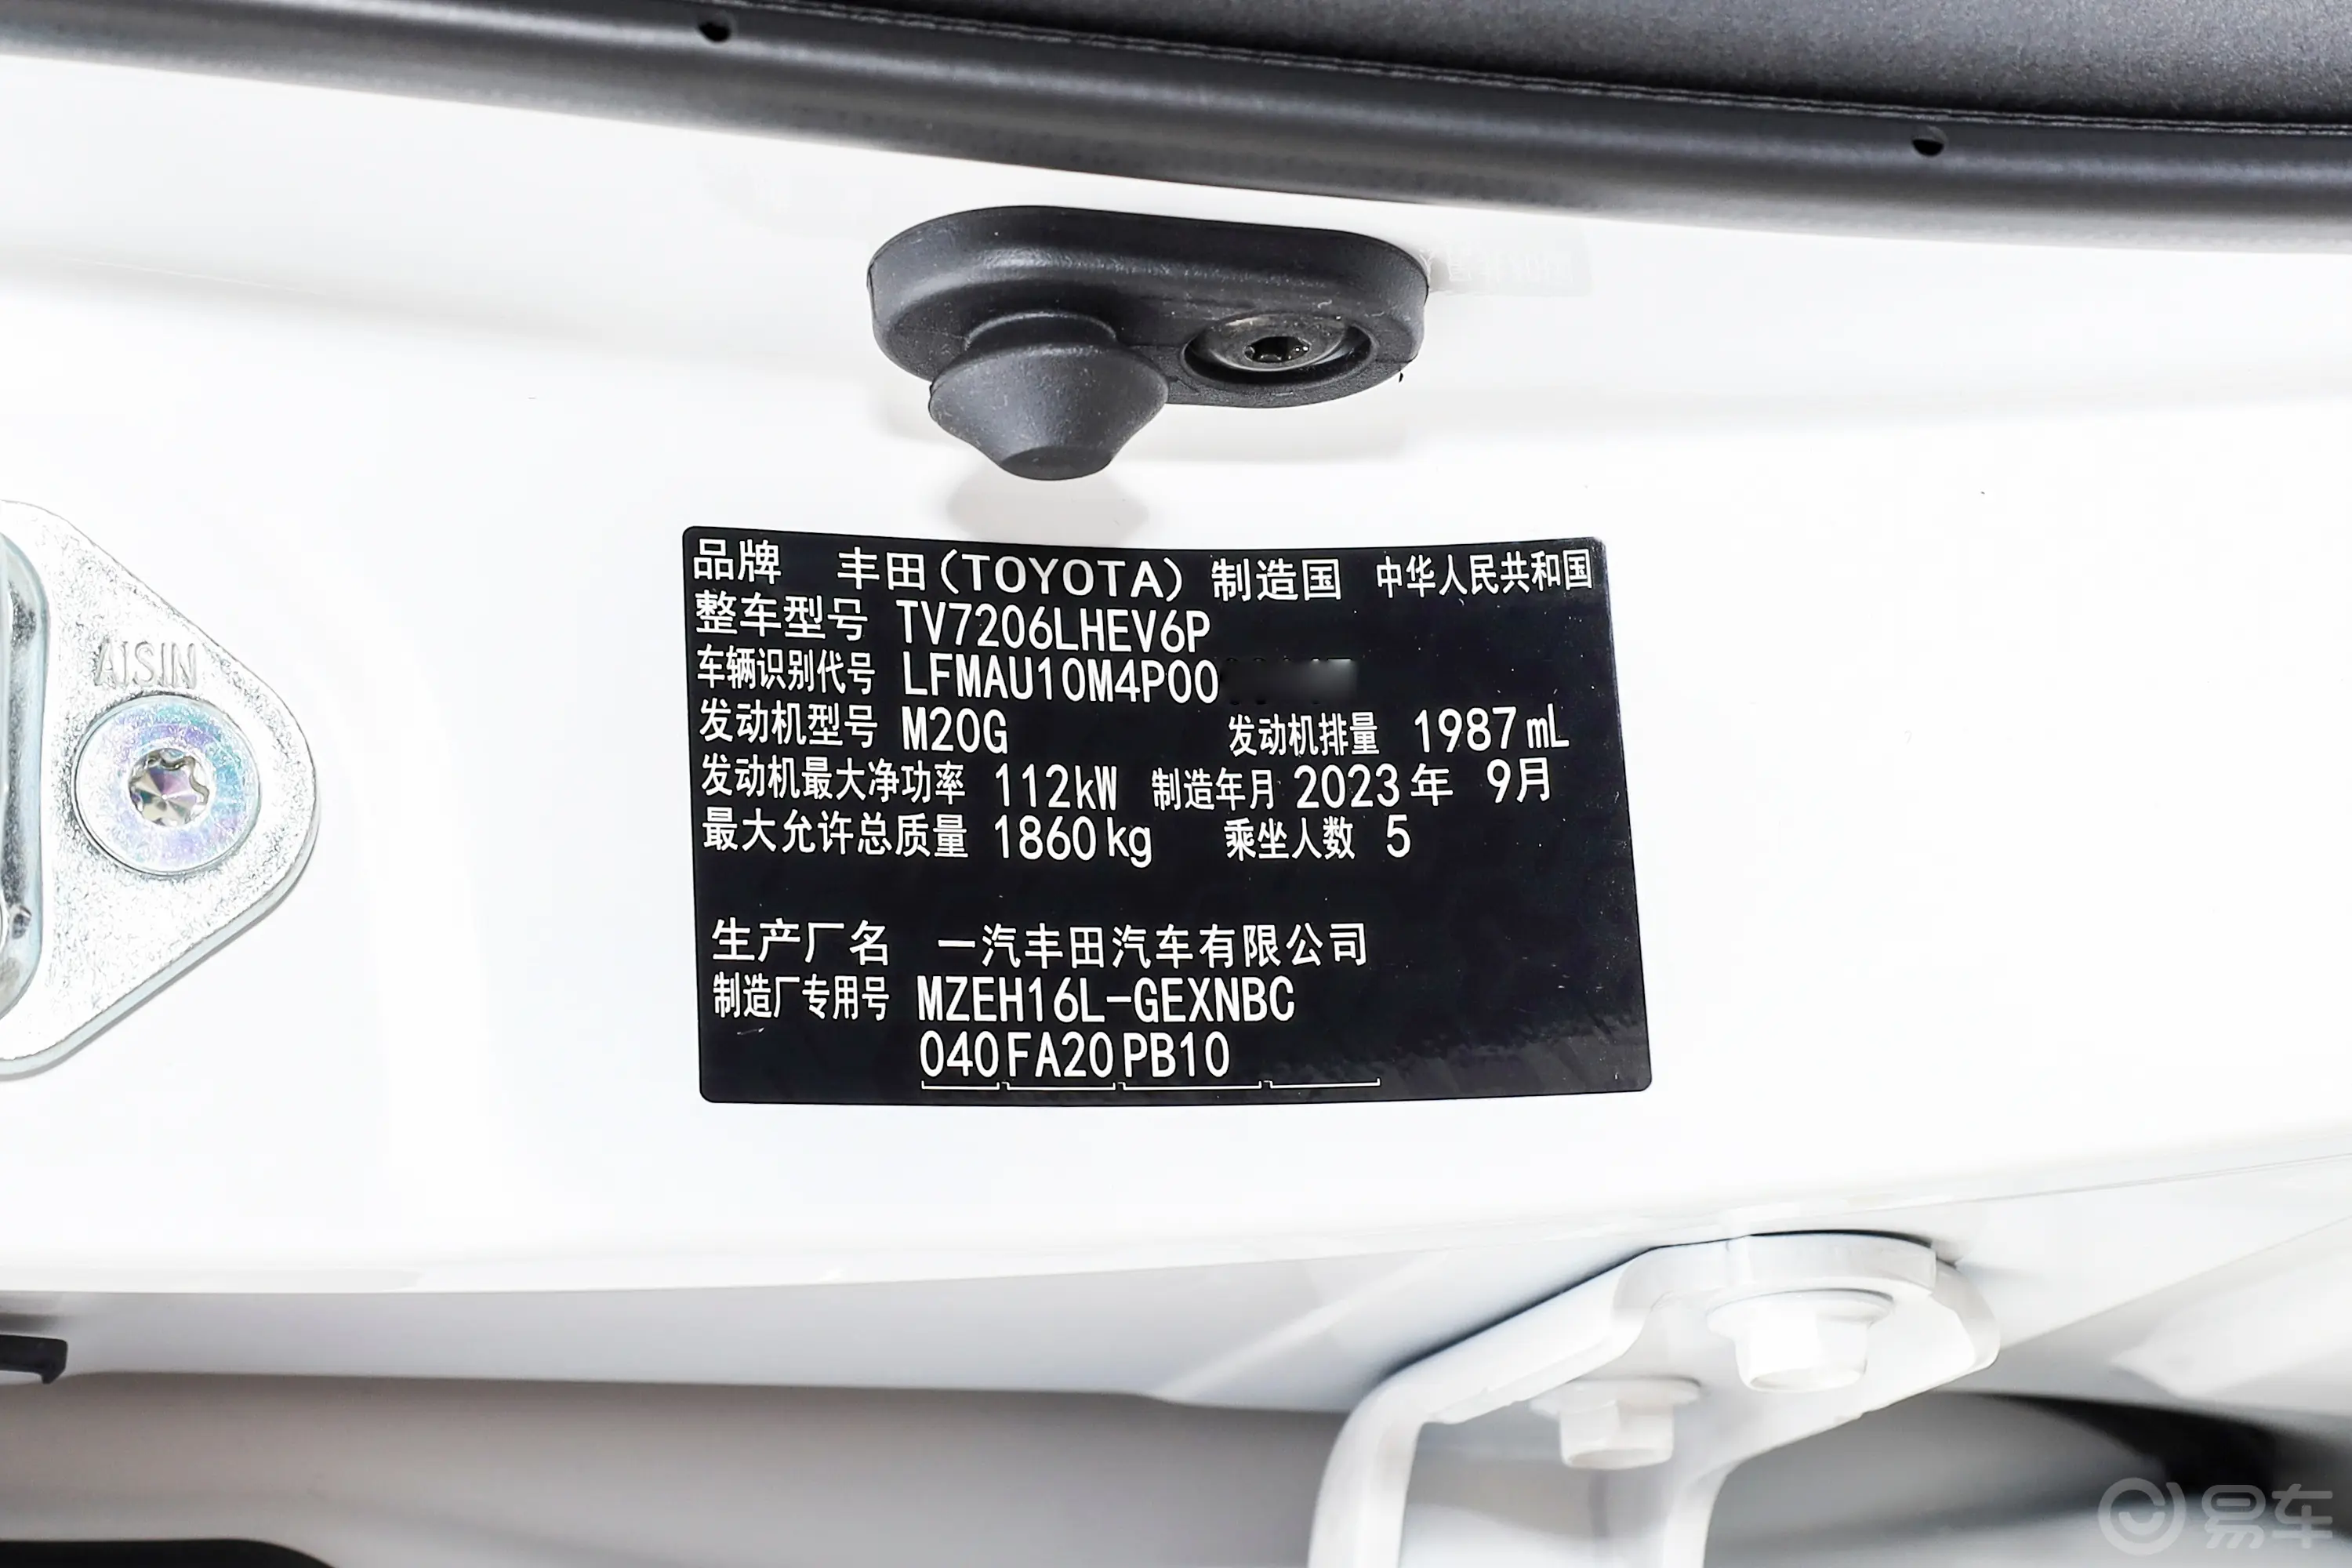 亚洲狮双擎 2.0L 精英版车辆信息铭牌